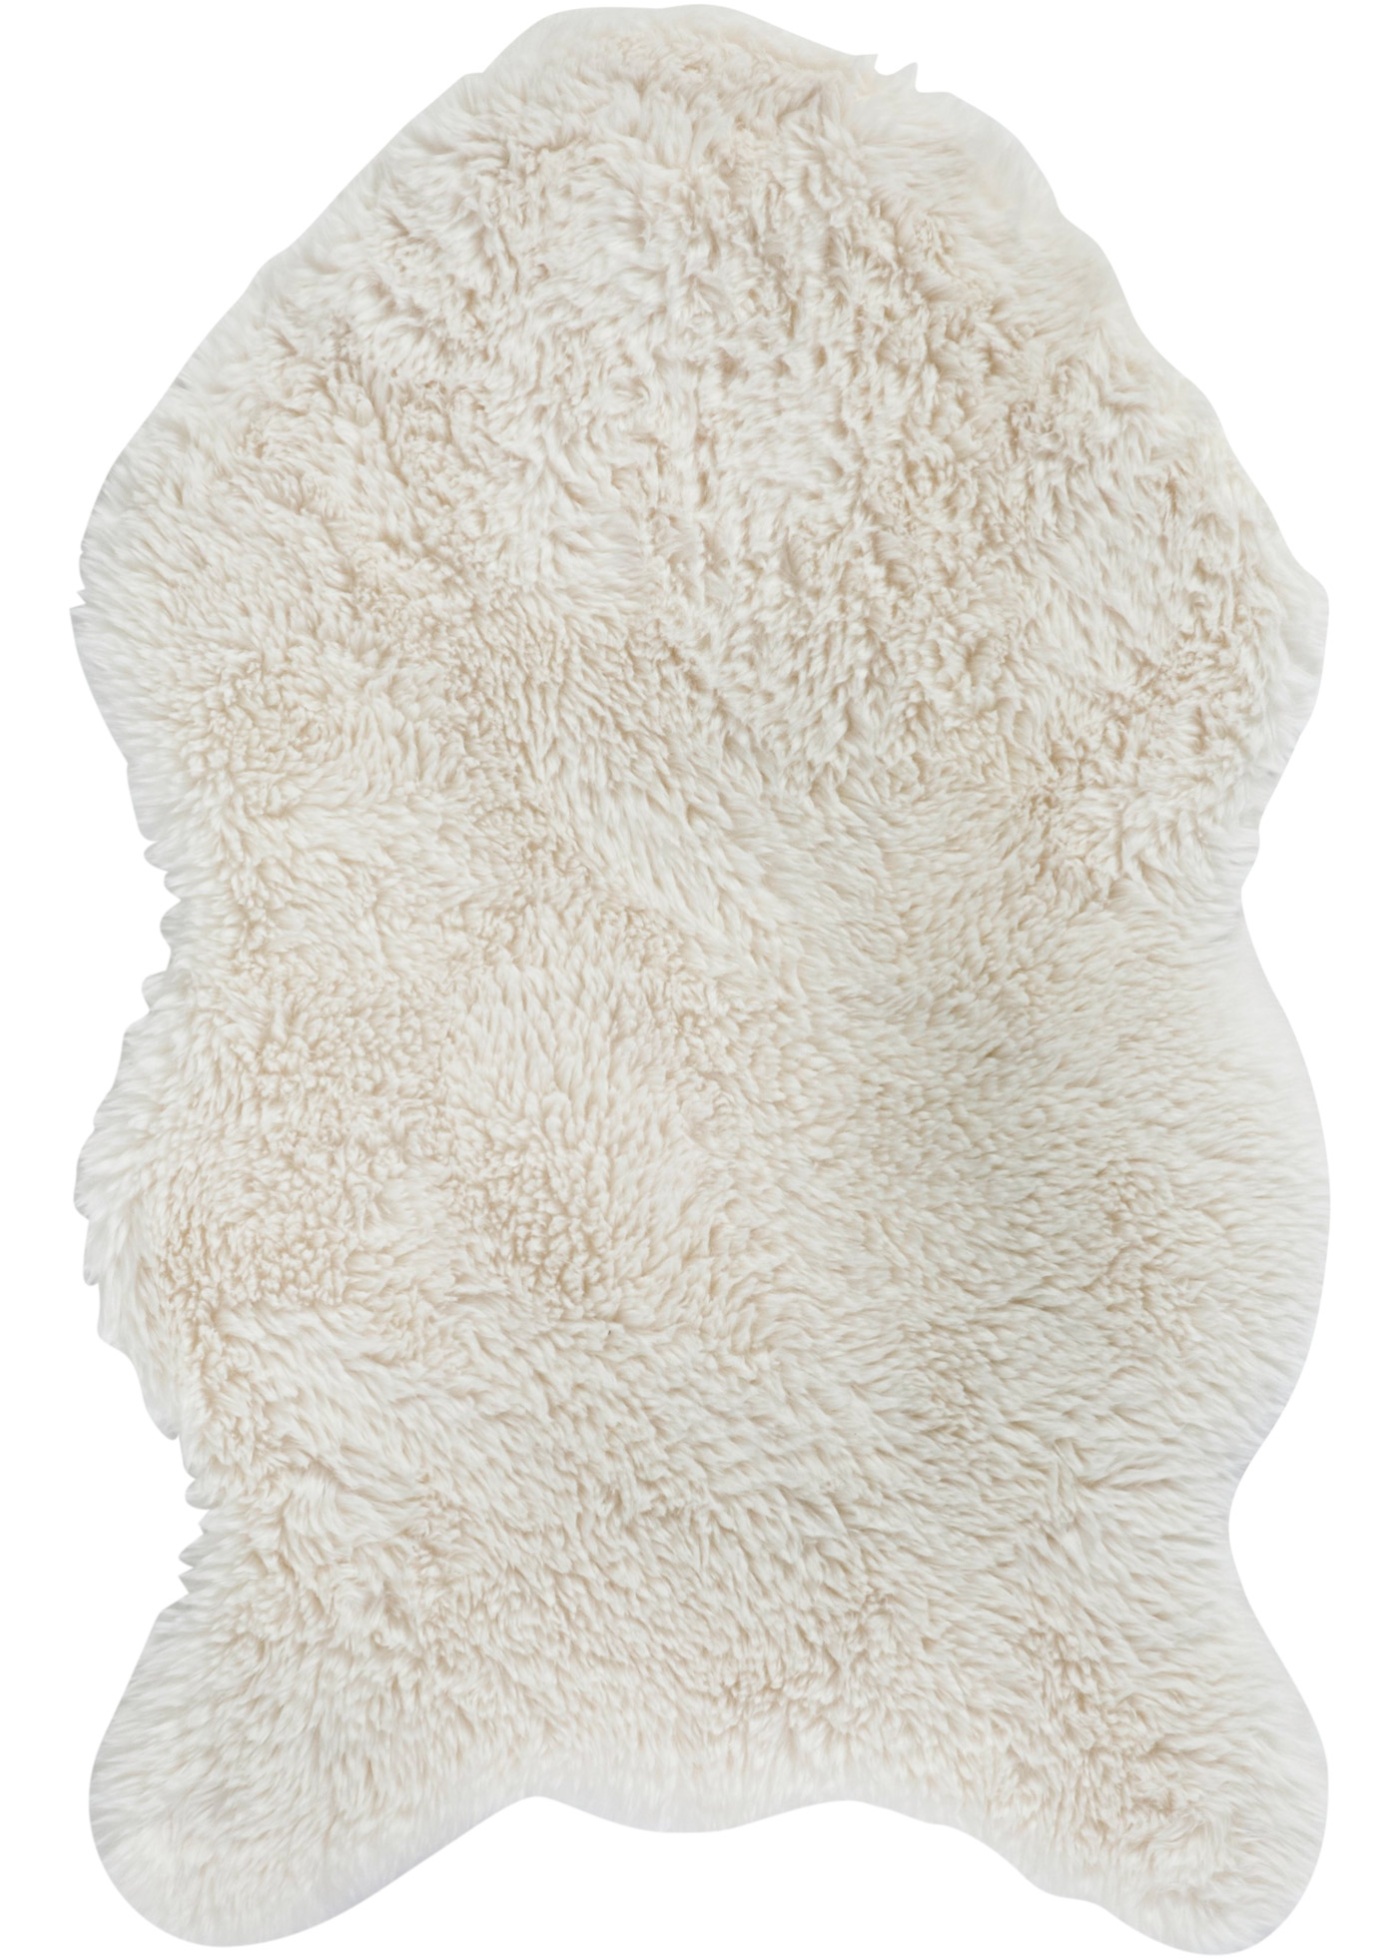 Tappeto in pelliccia sintetica (Beige) - bpc living bonprix collection